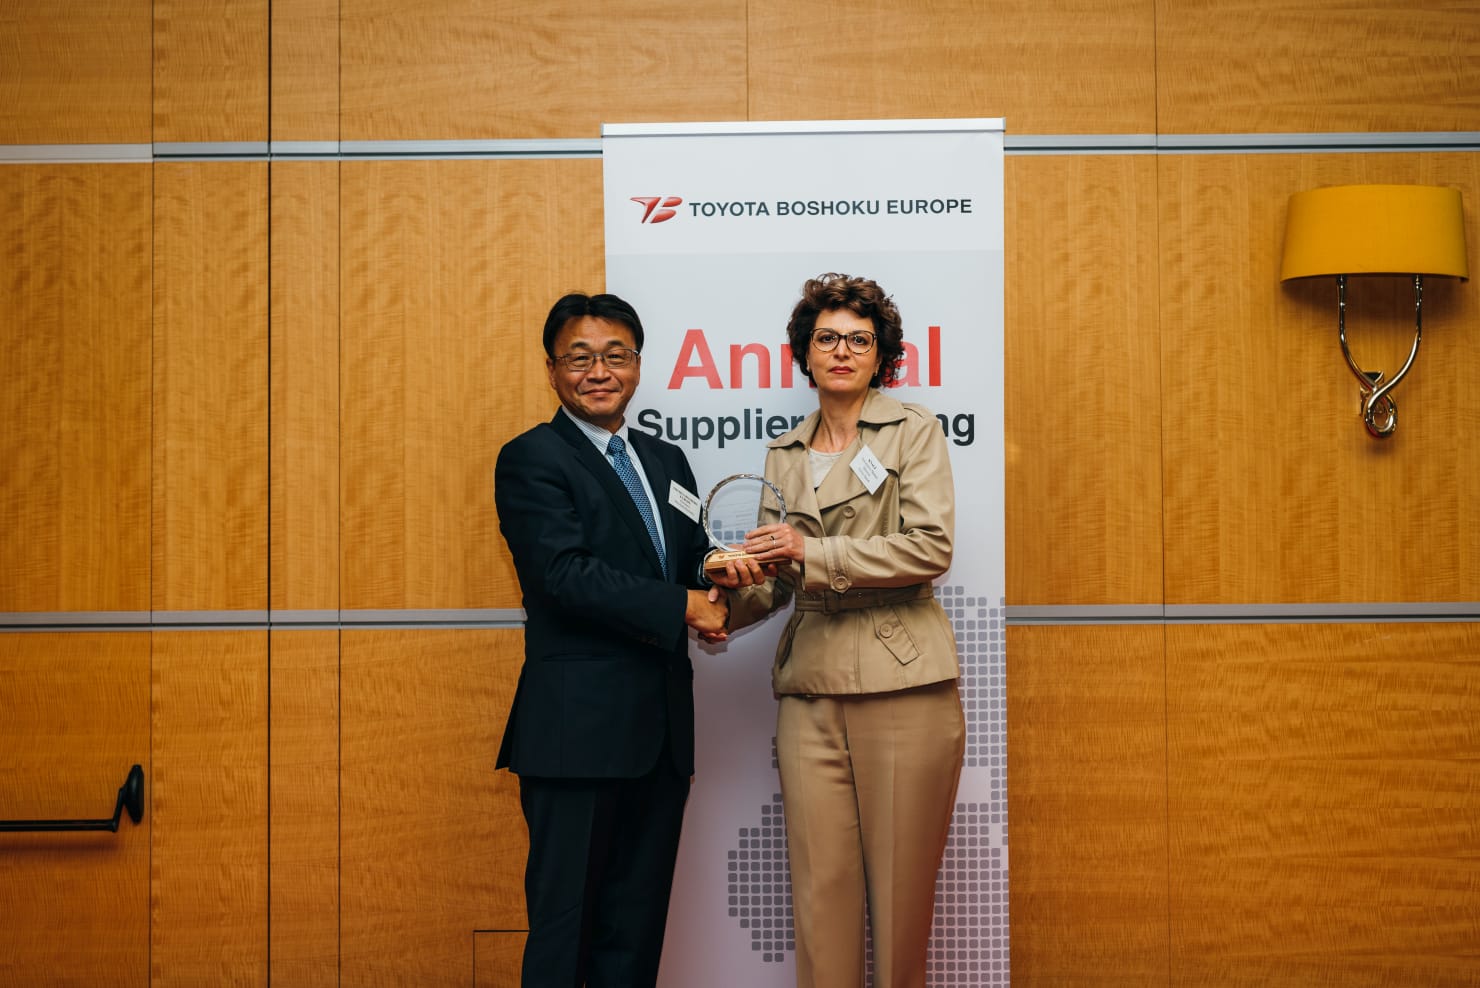 Ceremonia de entrega de premios a los mejores proveedores europeos de Toyota Boshoku en Zaventem.